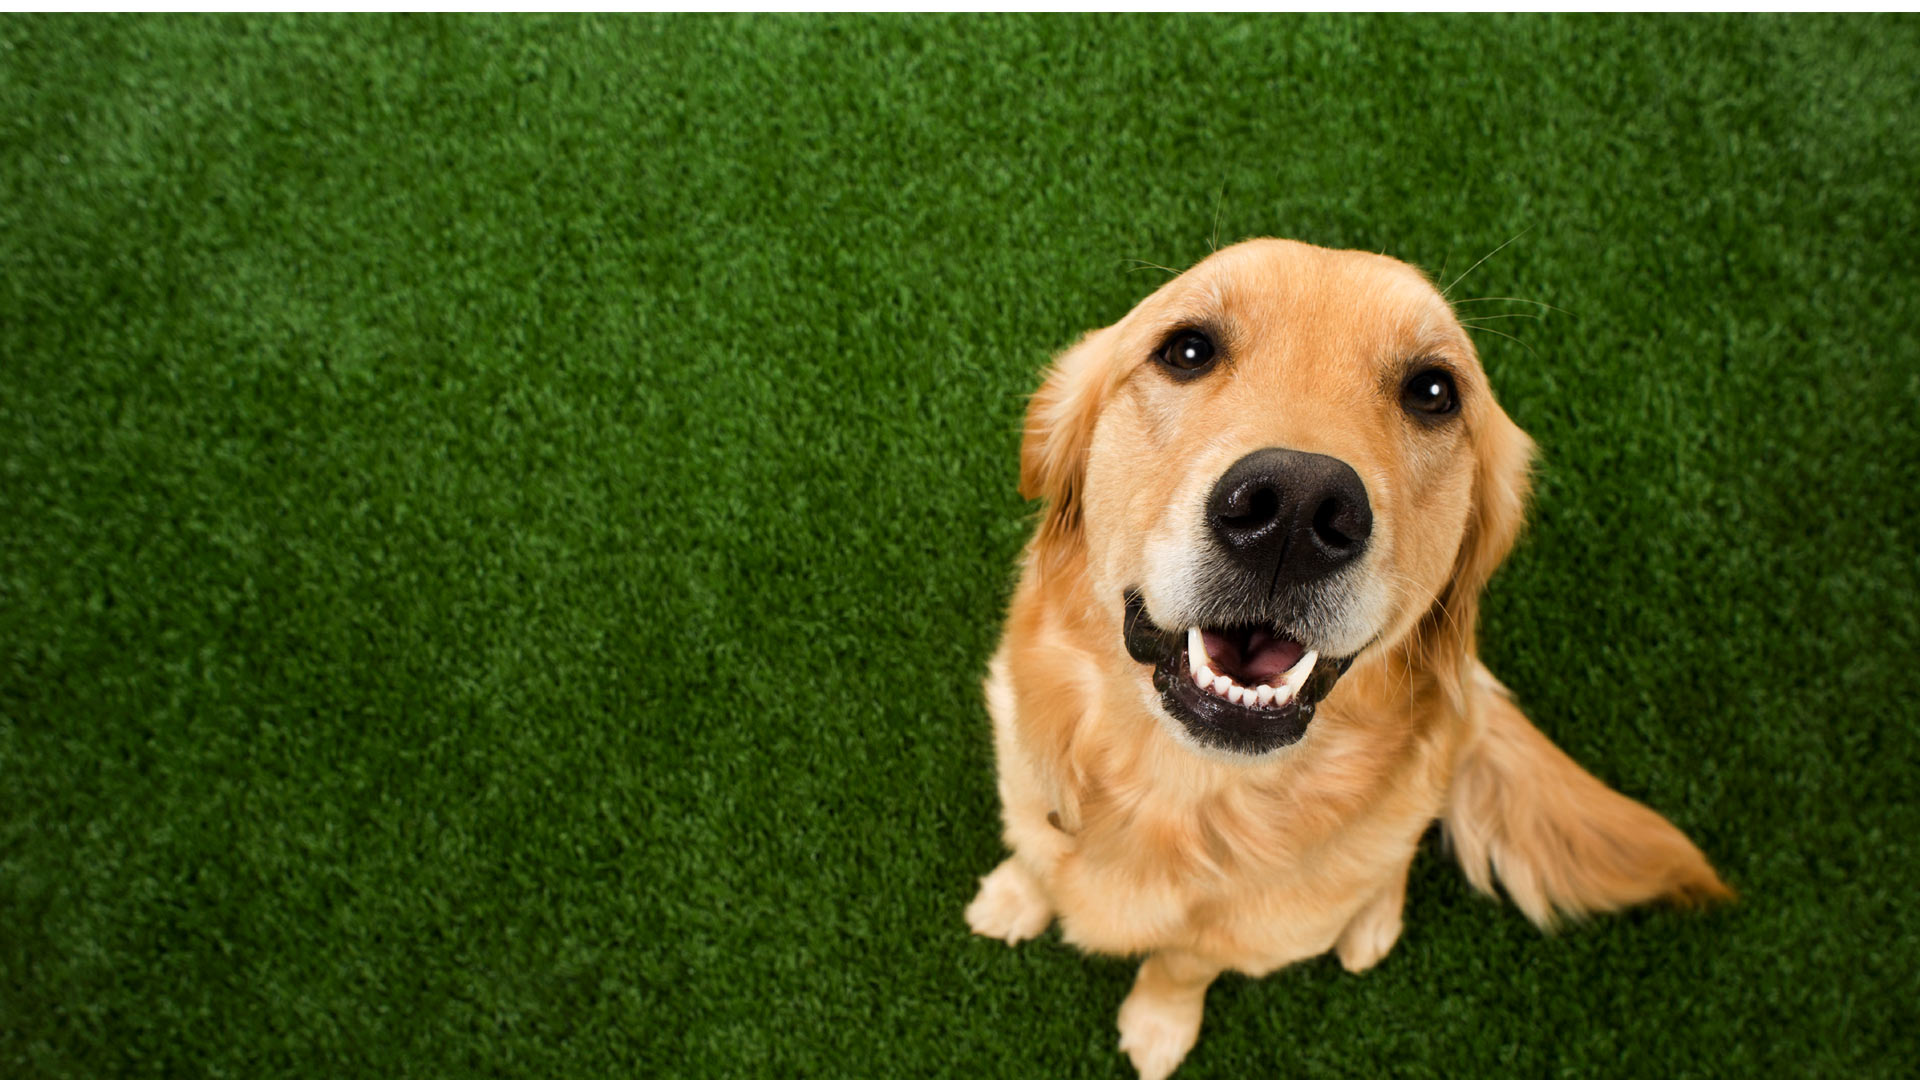 Un estudio de mostró que, contrario a lo presumido, los canes confían más en su memoria que en su sentido del olfato